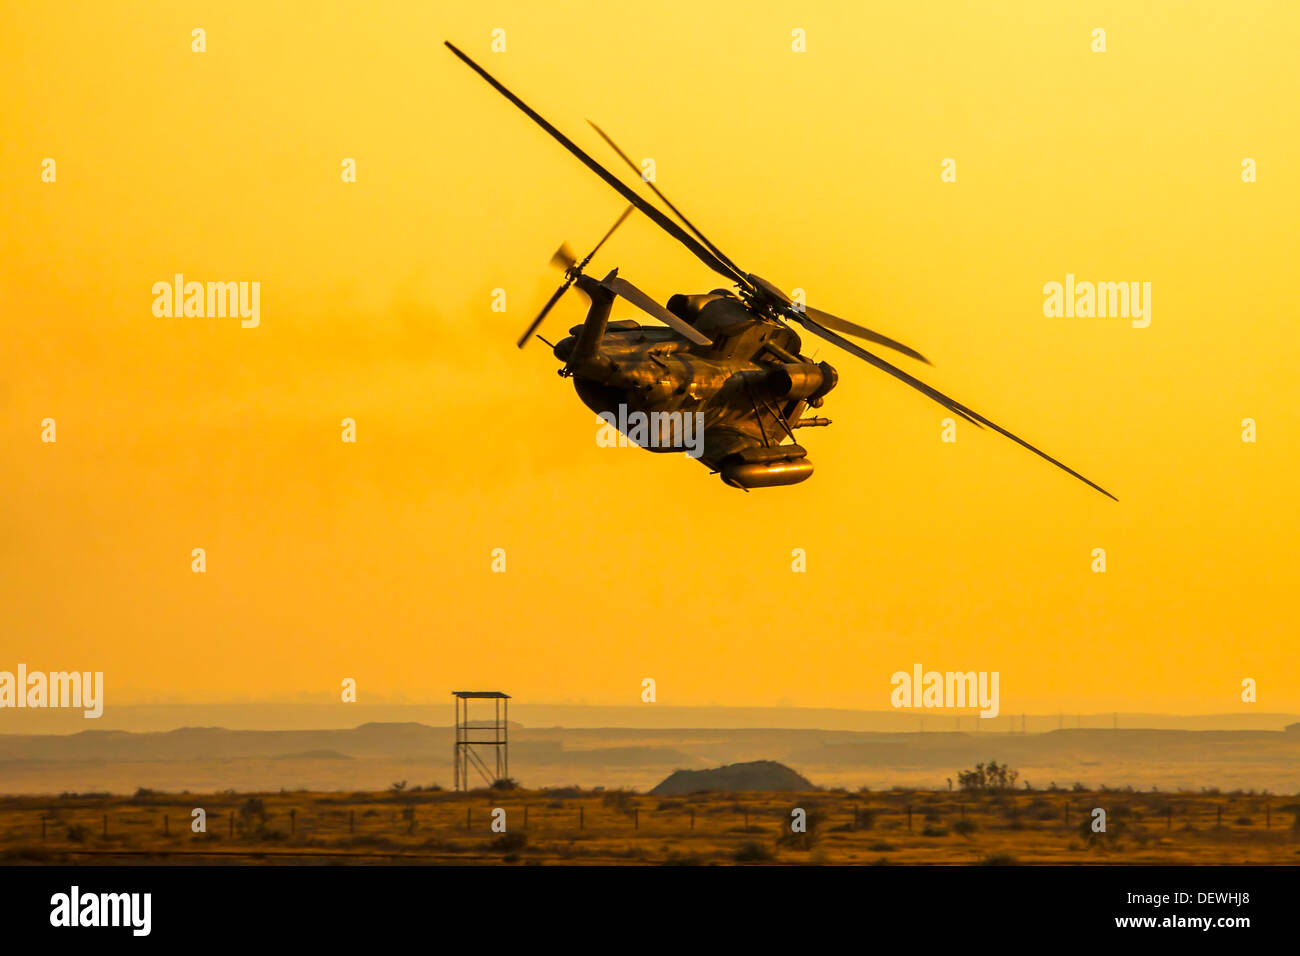 De l'air israélienne (IAF) hélicoptère Sikorsky CH-53 en vol Banque D'Images